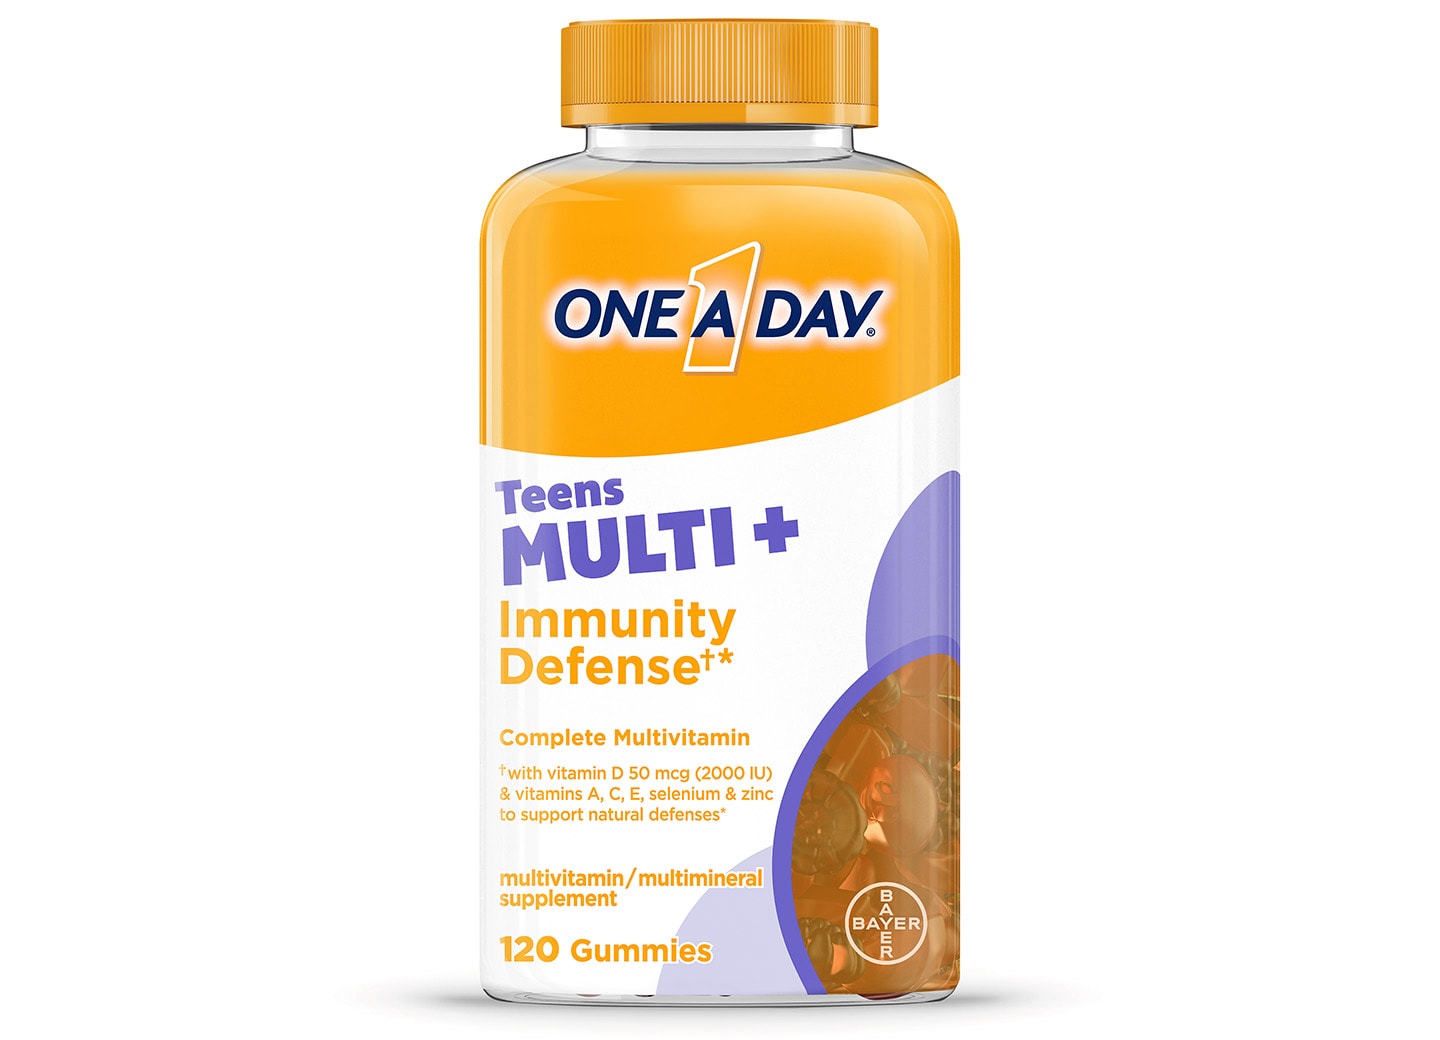 One A Day Teens MULTI+ Immunity Defense